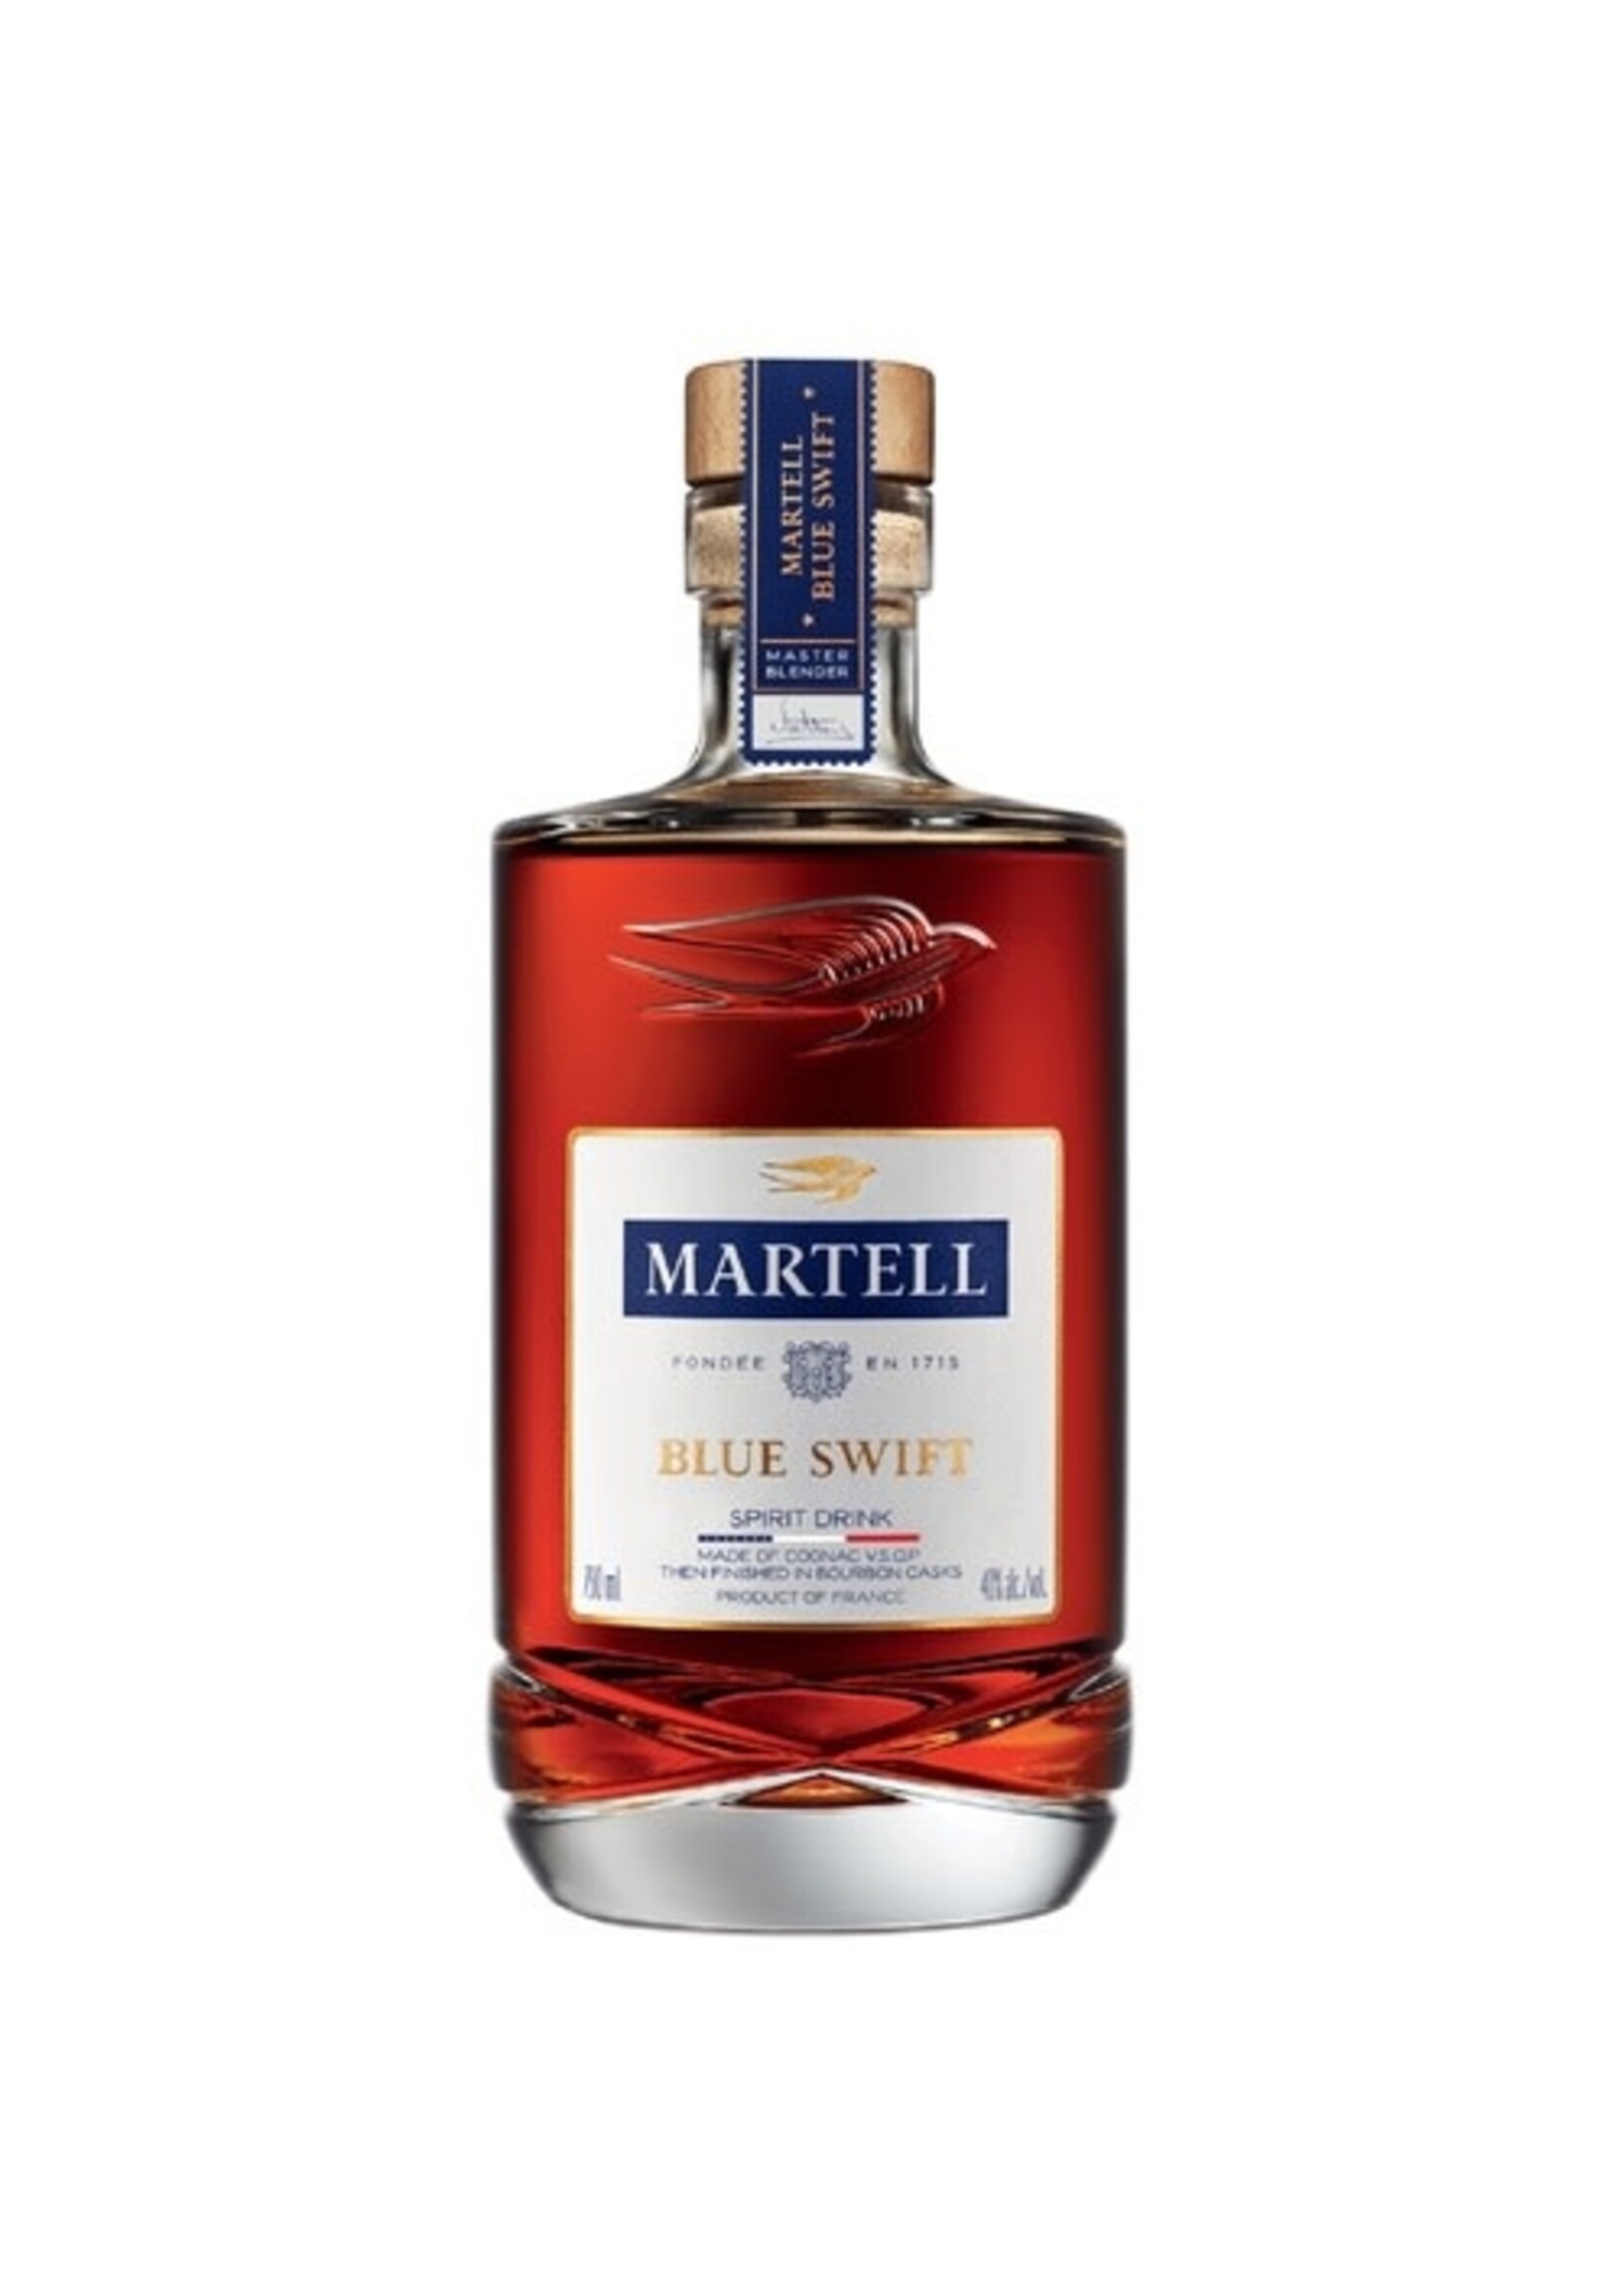 Martell Cognac VSOP Blue Swift 80Proof 750ml